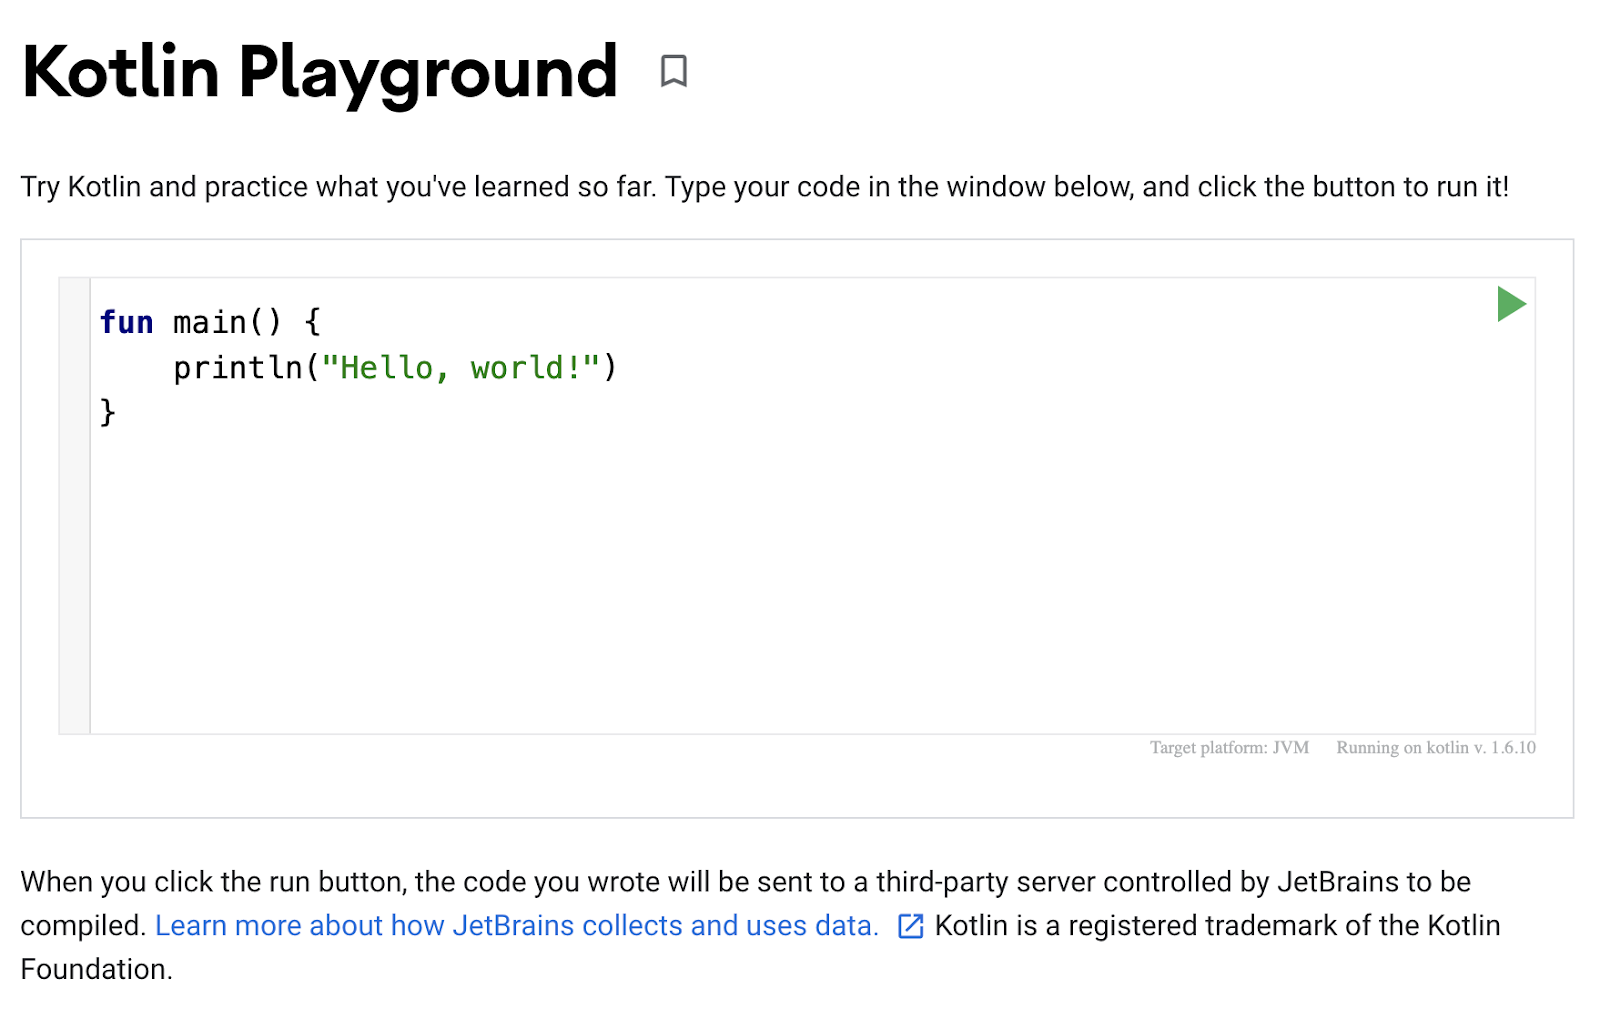 Uma captura de tela do Playground Kotlin sendo mostrada. O editor de código mostra um programa simples para exibir &quot;Hello, world!&quot; na saída.